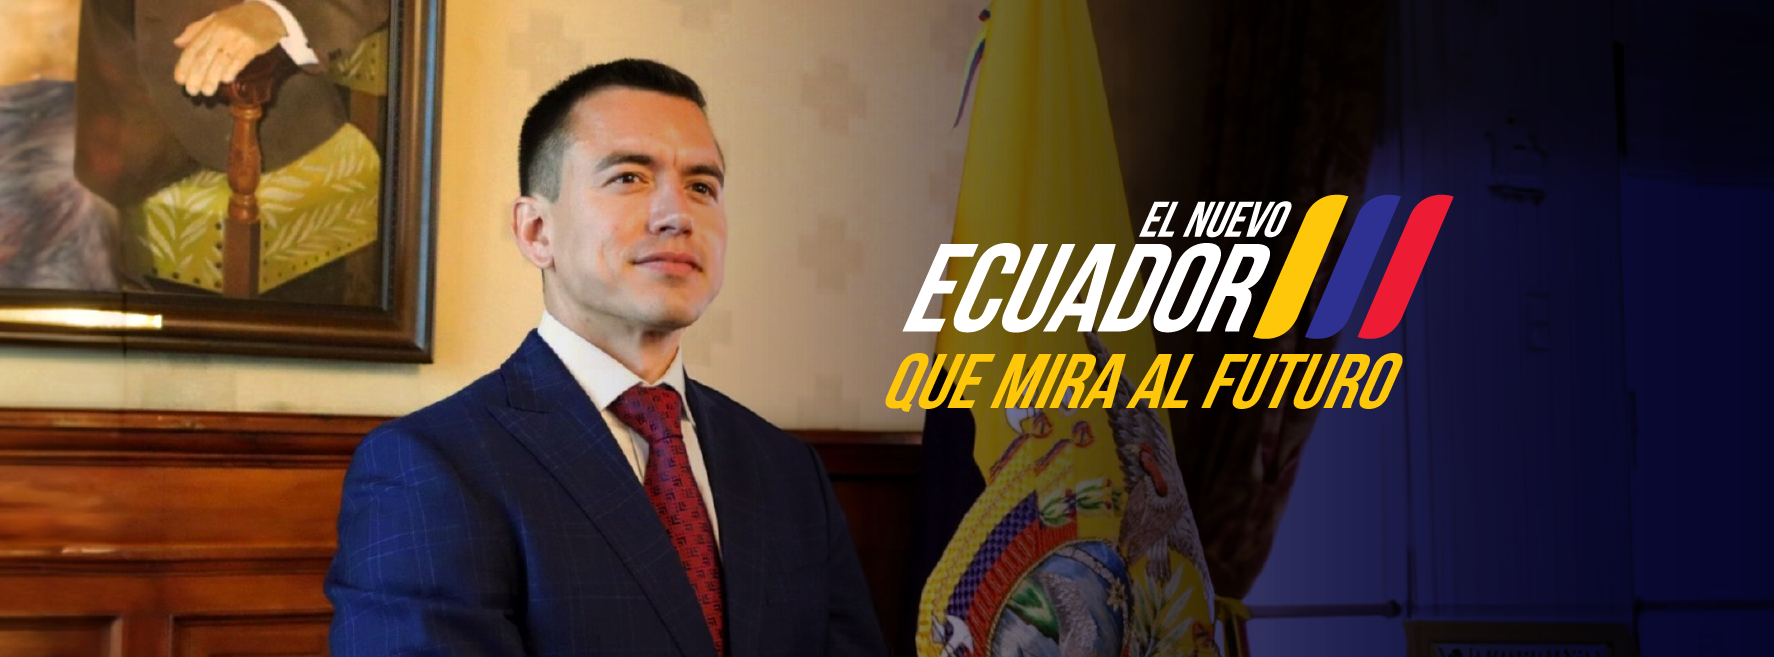 El nuevo Ecuador